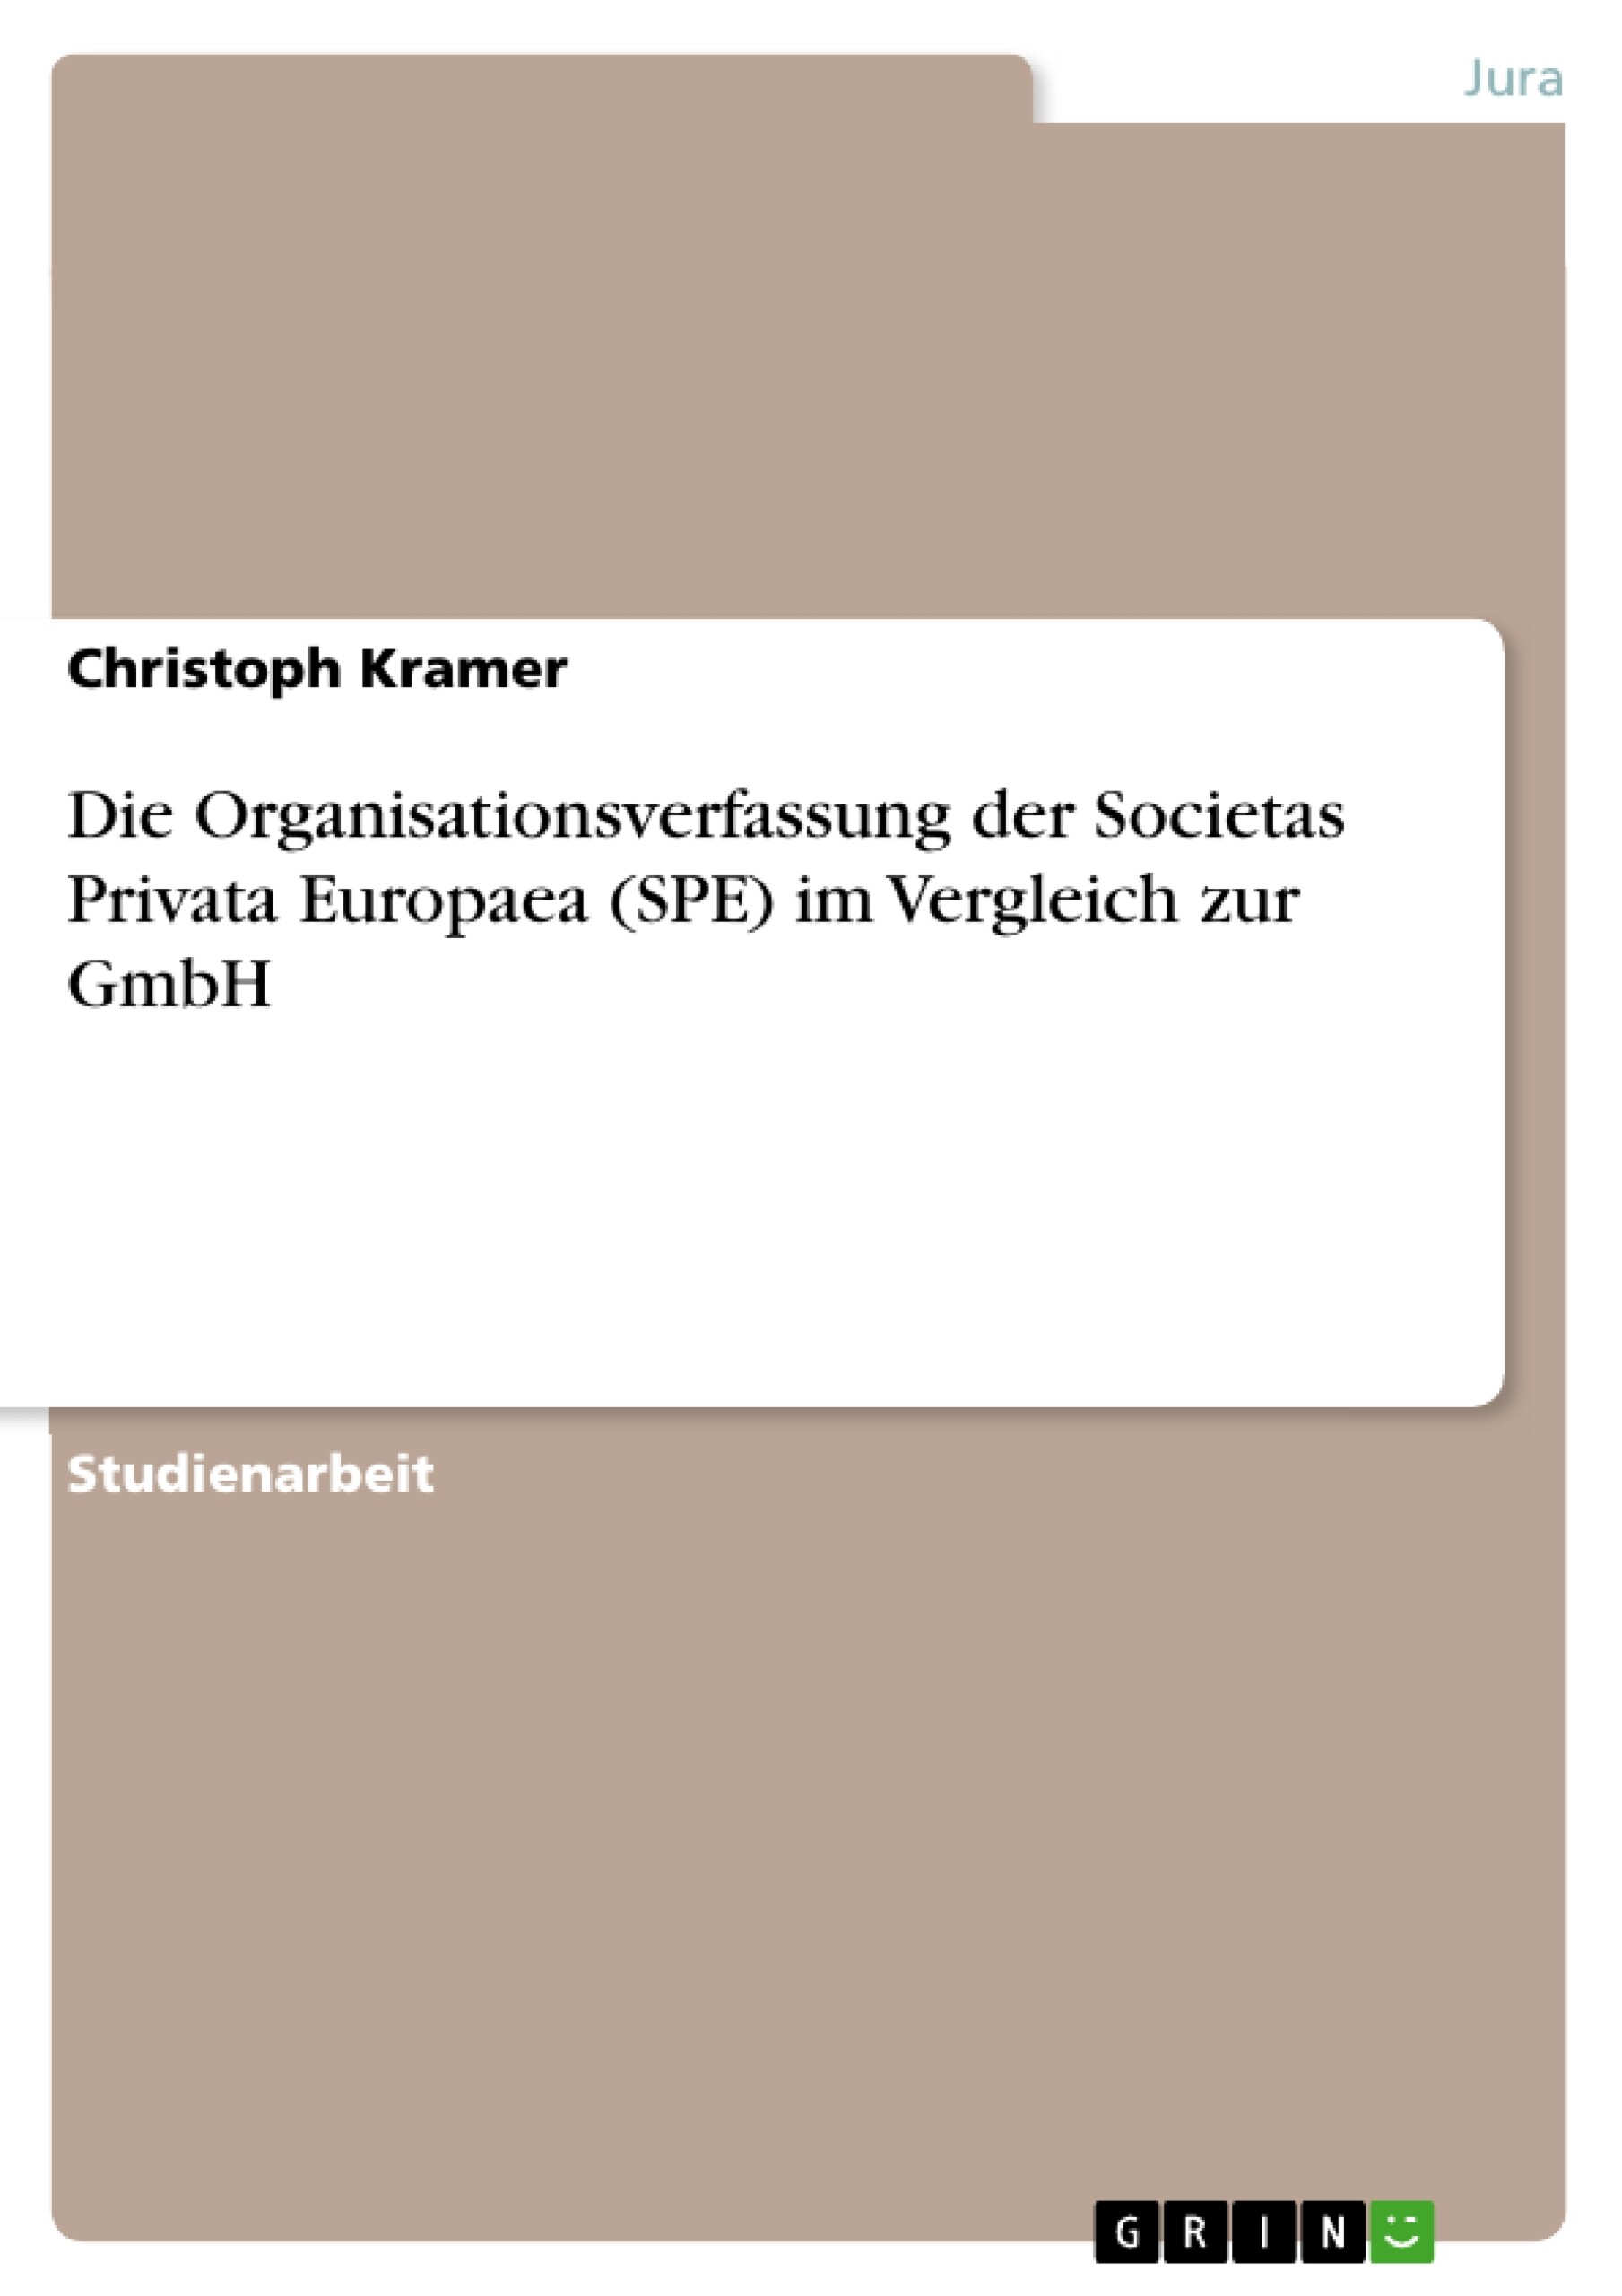 Die Organisationsverfassung der Societas Privata Europaea (SPE) im Vergleich zur GmbH